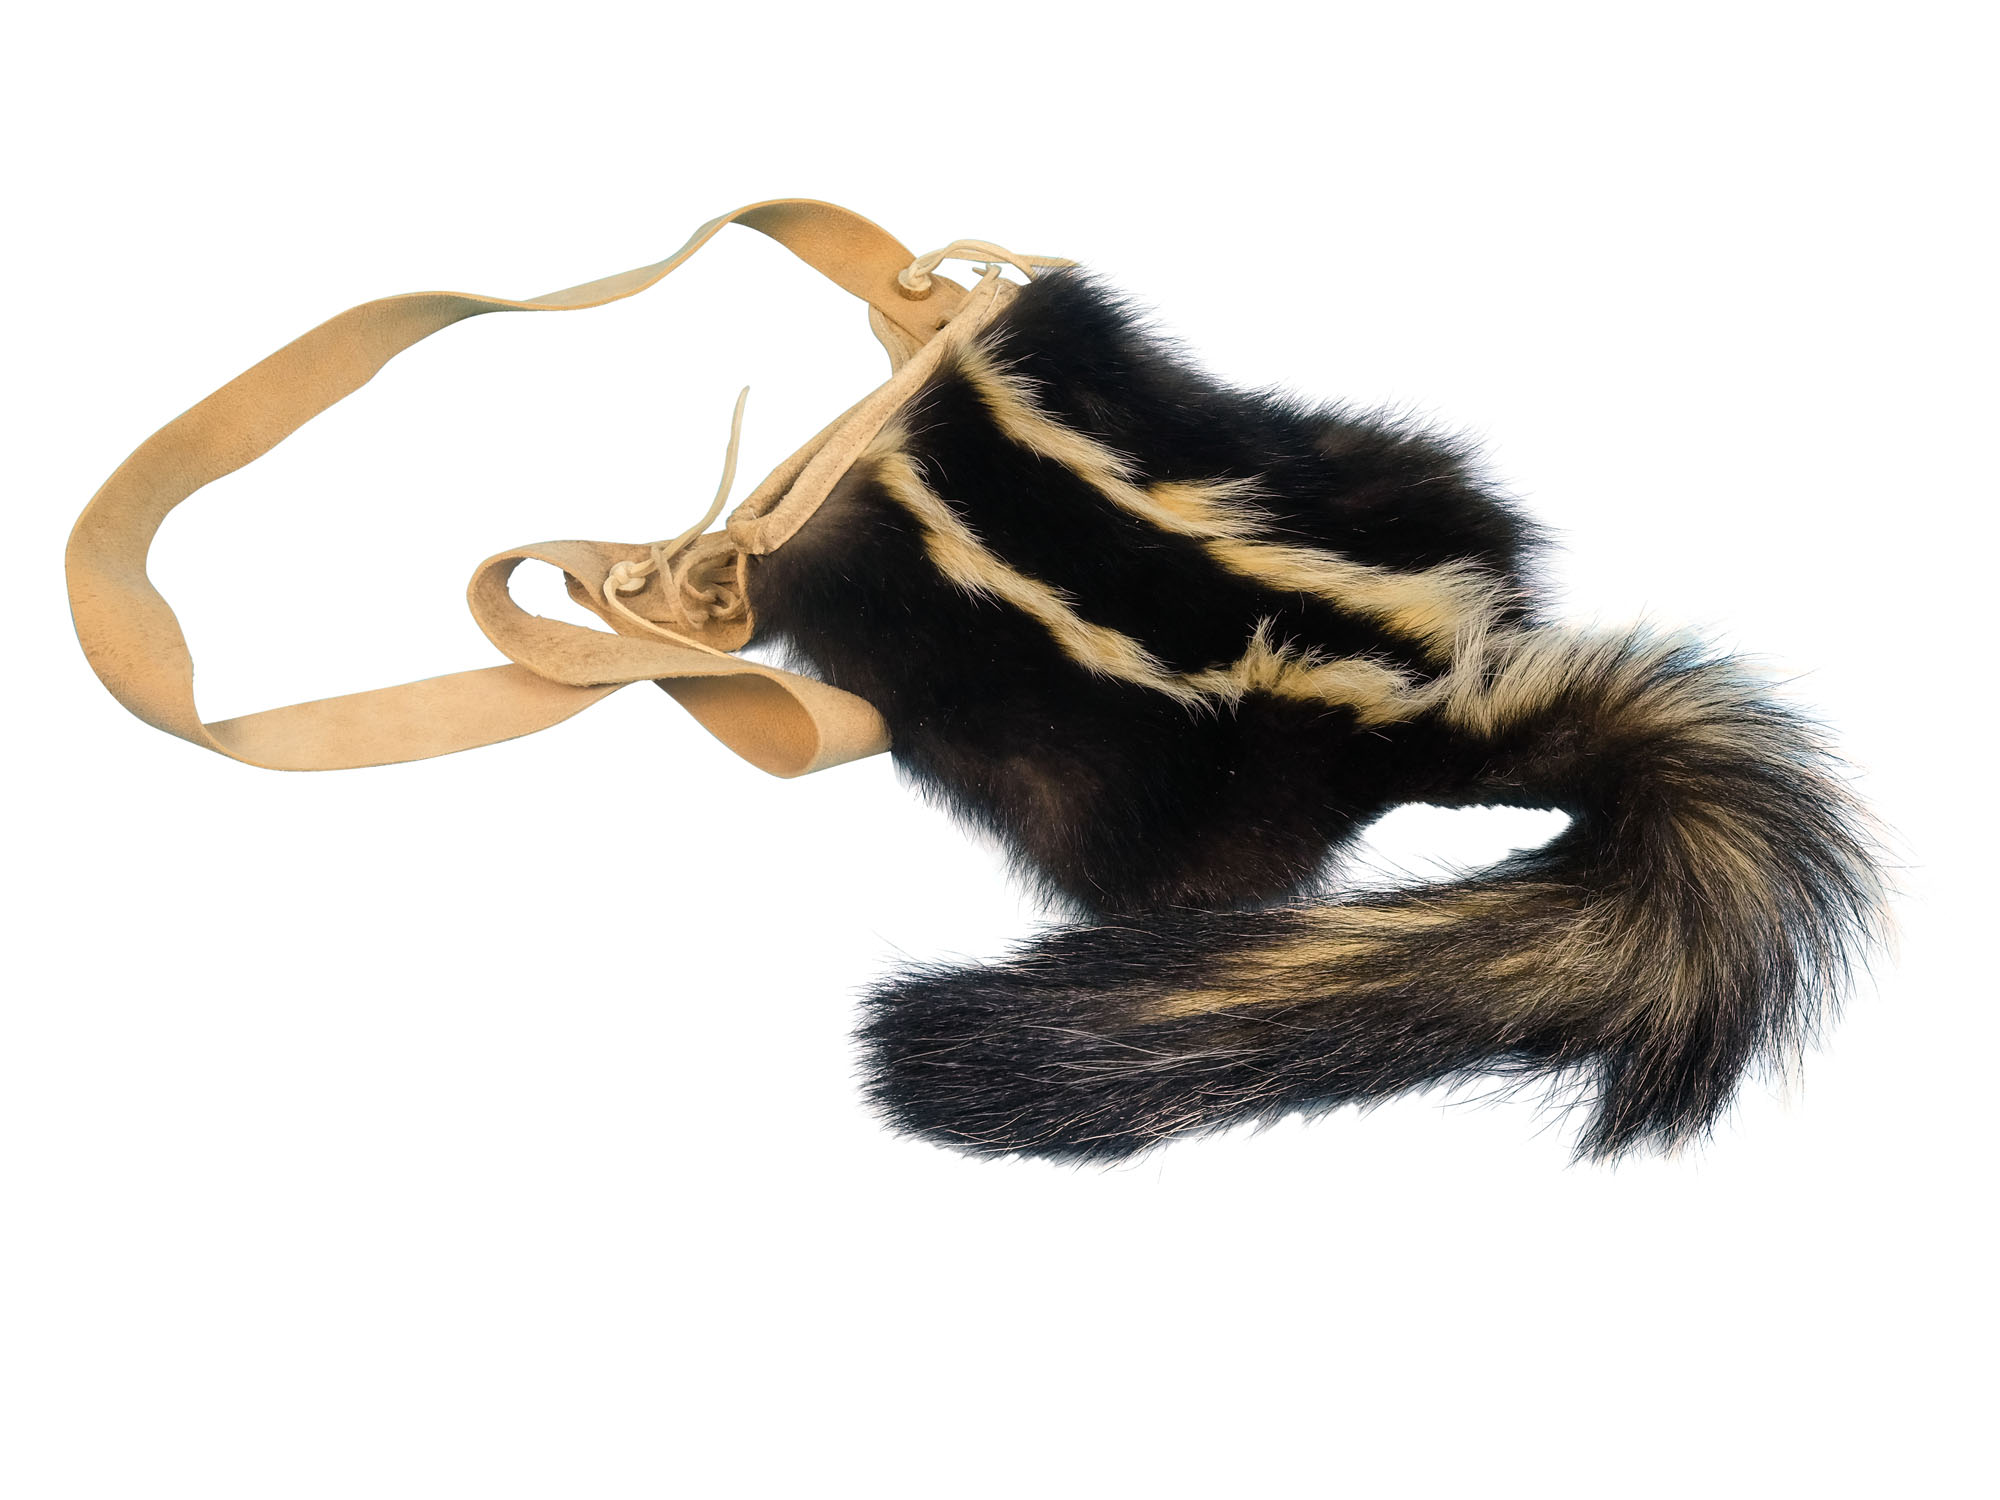 Skunk Bag: Gallery Item skunk bags